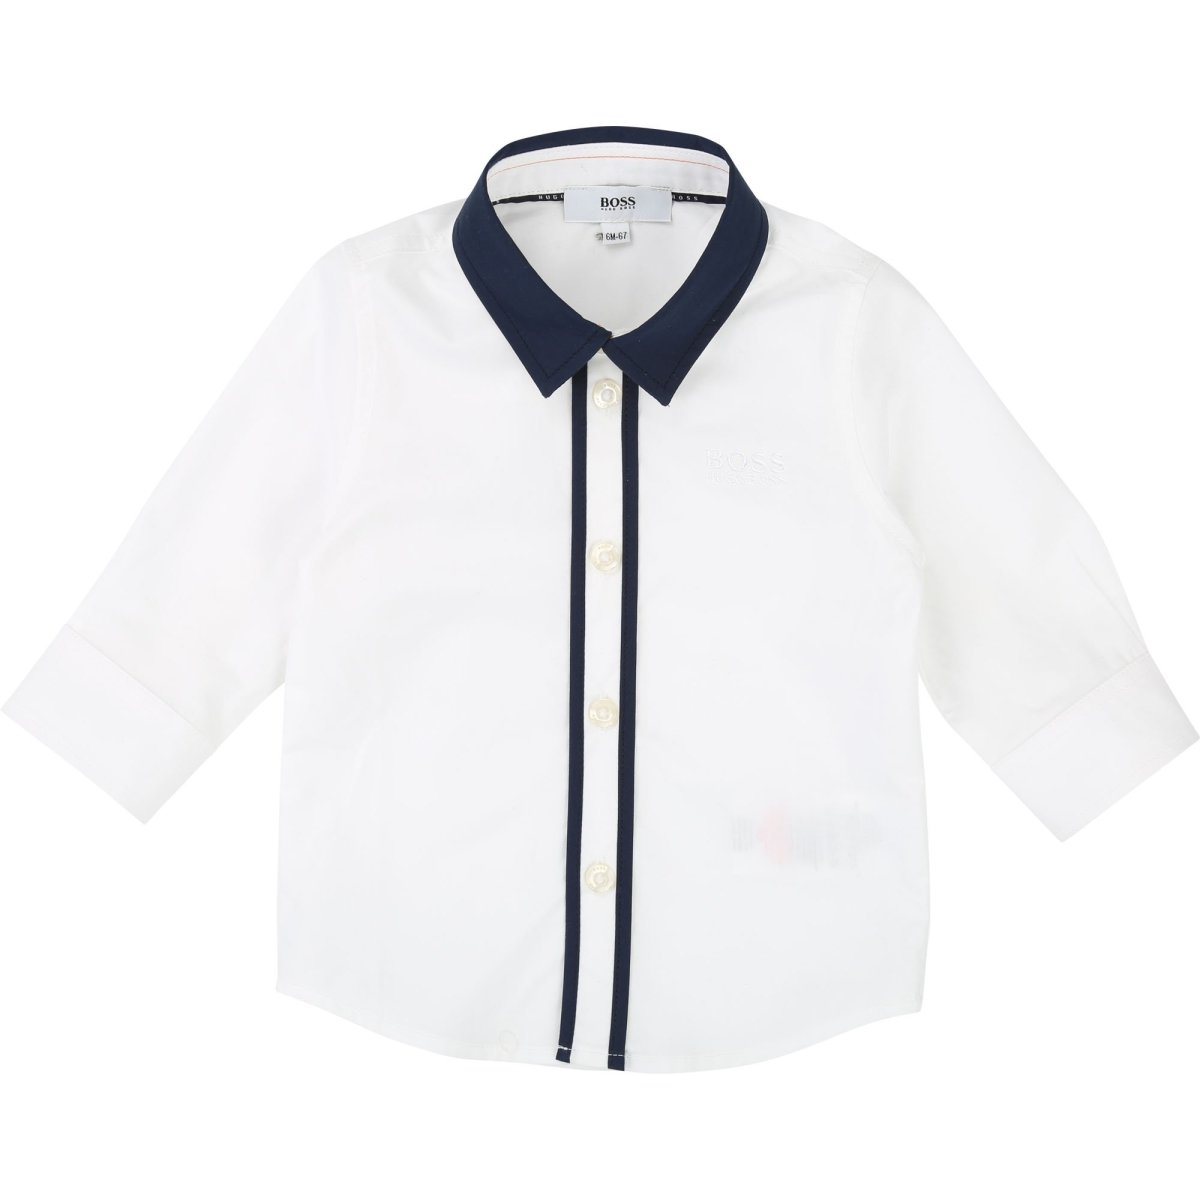 Hugo Boss Toddler Long Sleeve White Dress Shirt J05689 Dress Shirts Hugo Boss 